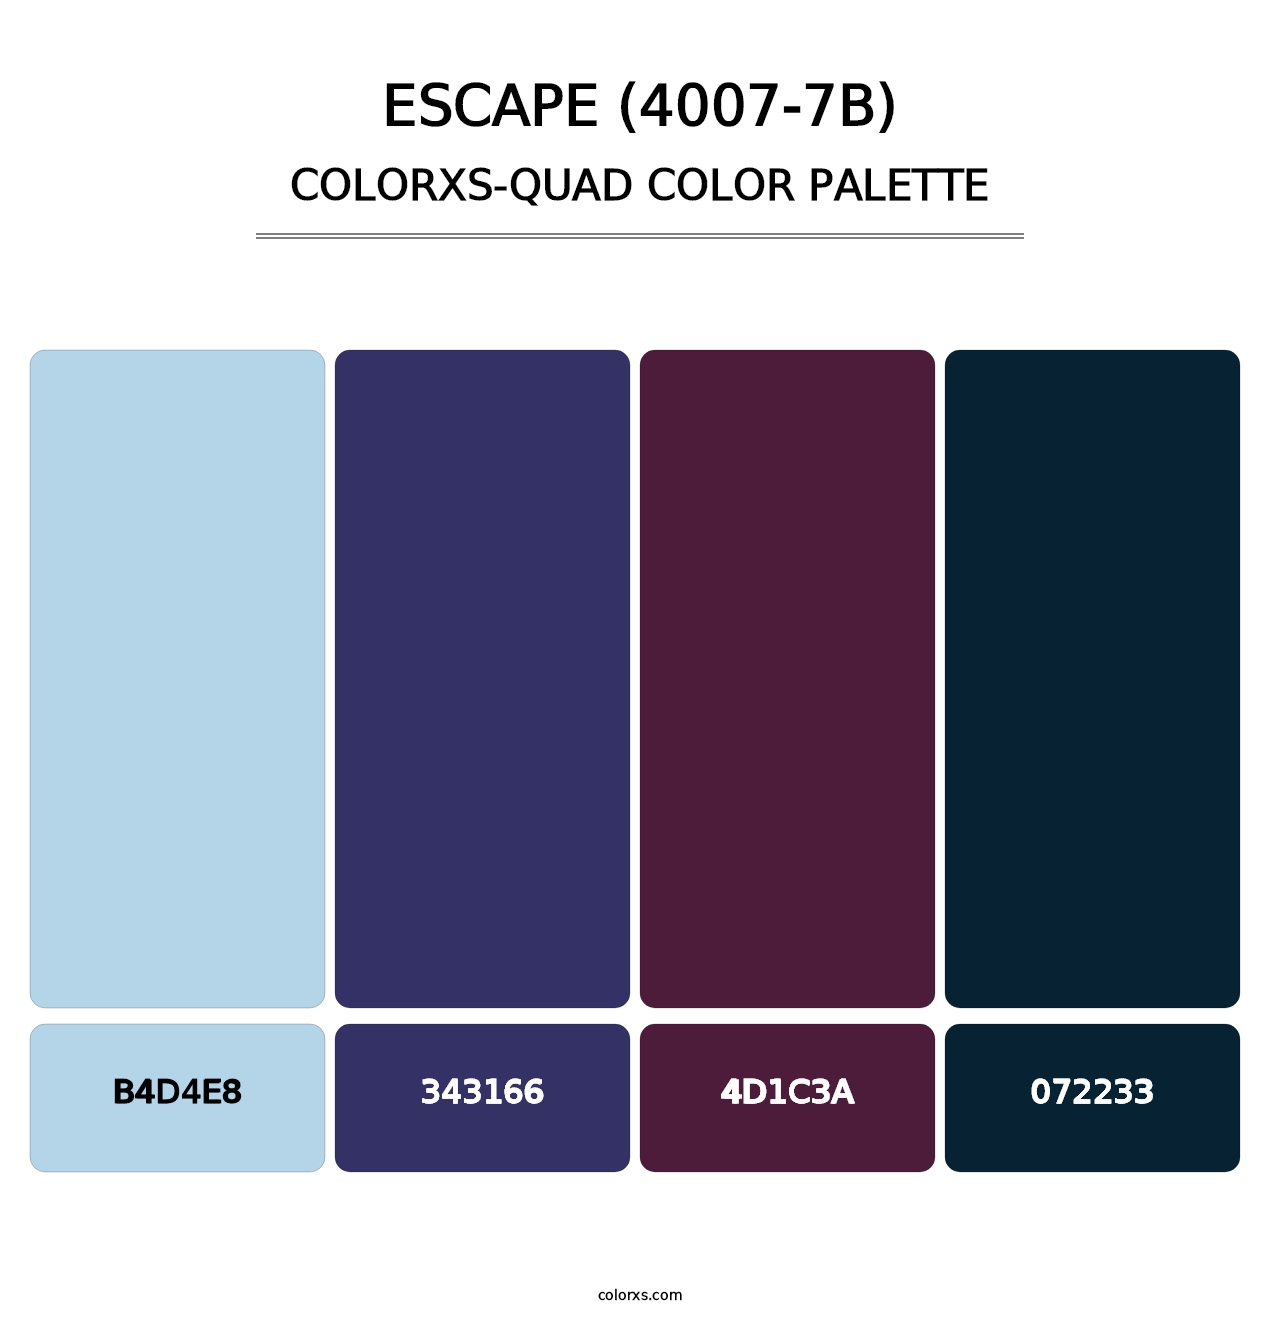 Escape (4007-7B) - Colorxs Quad Palette